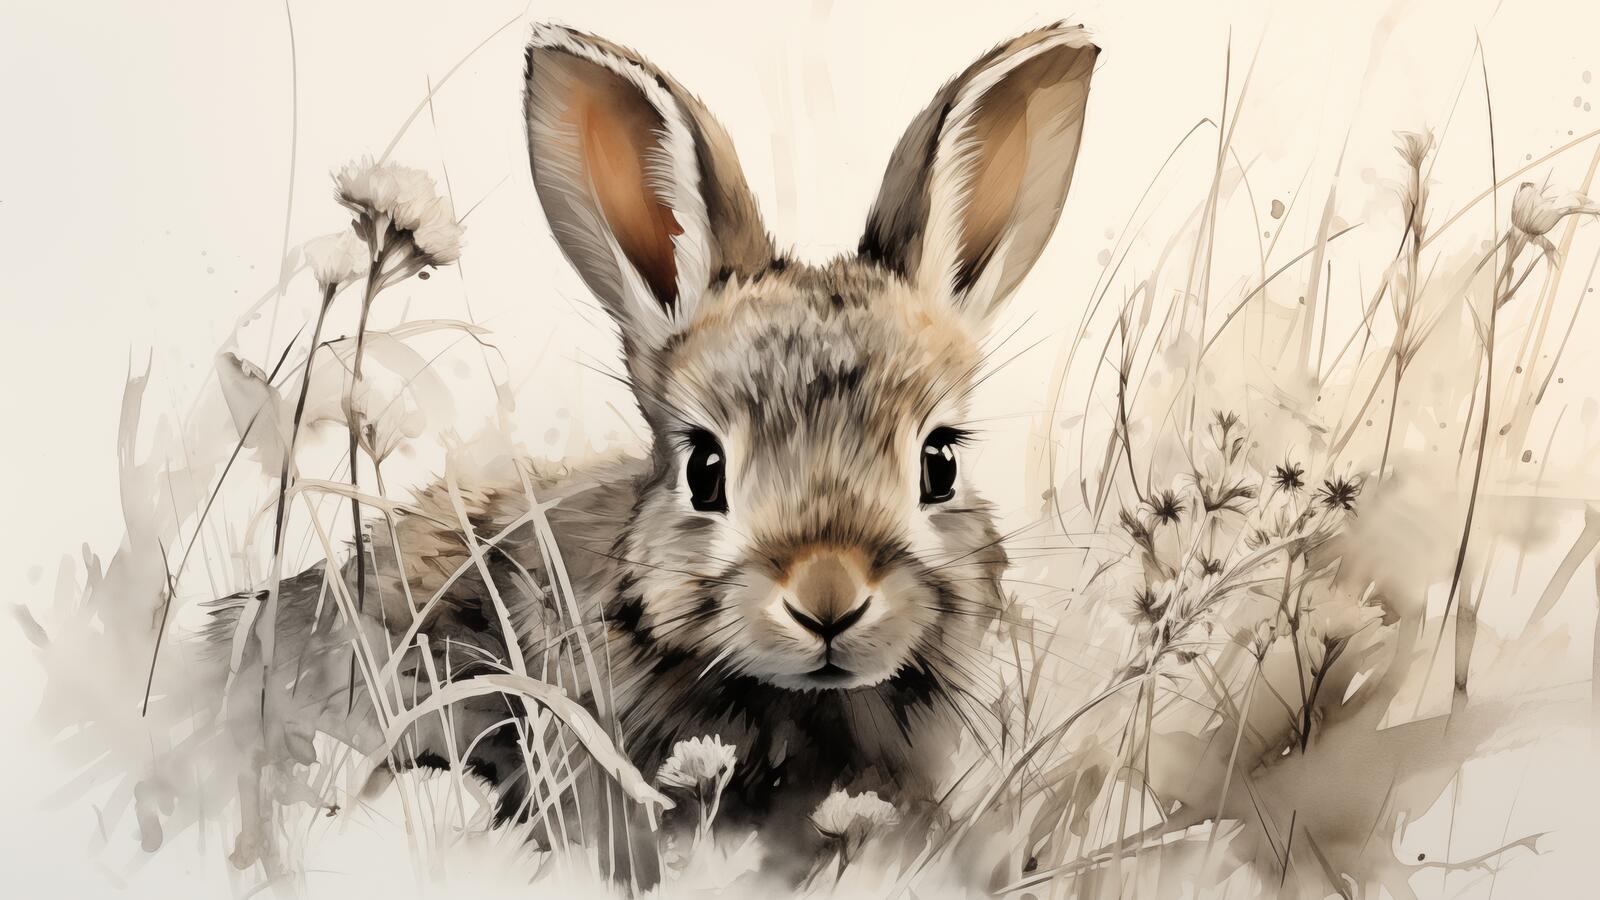 Бесплатное фото Картина с изображением маленького кролика